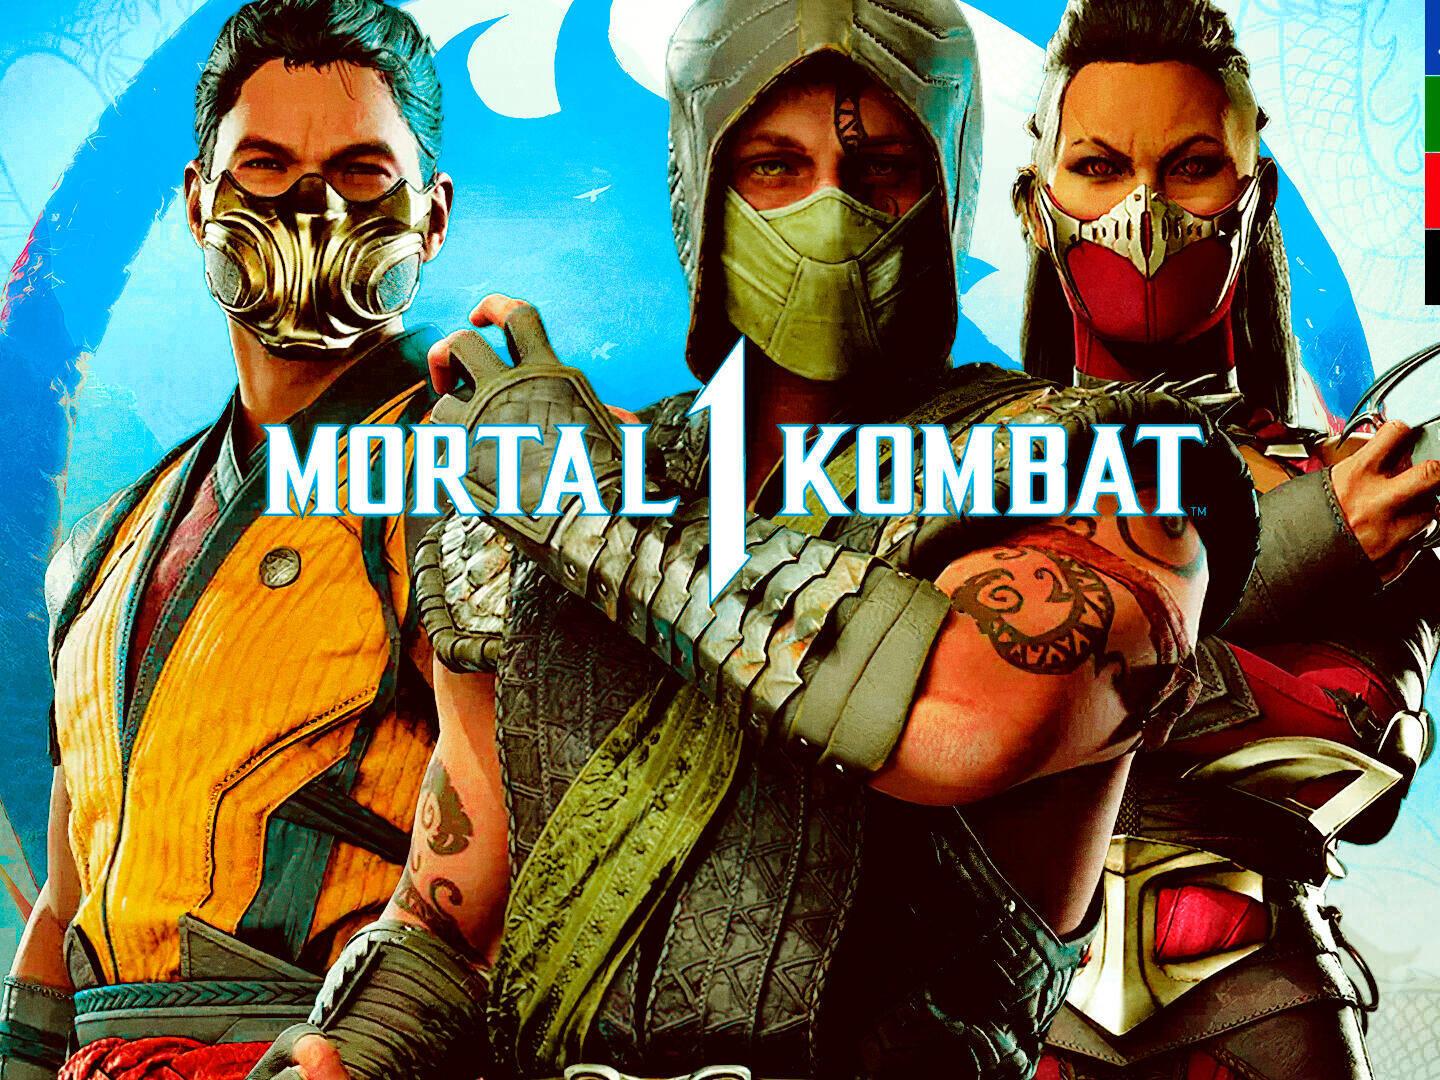 Mortal Kombat 1 ofrece interesantes detalles de sus luchadores